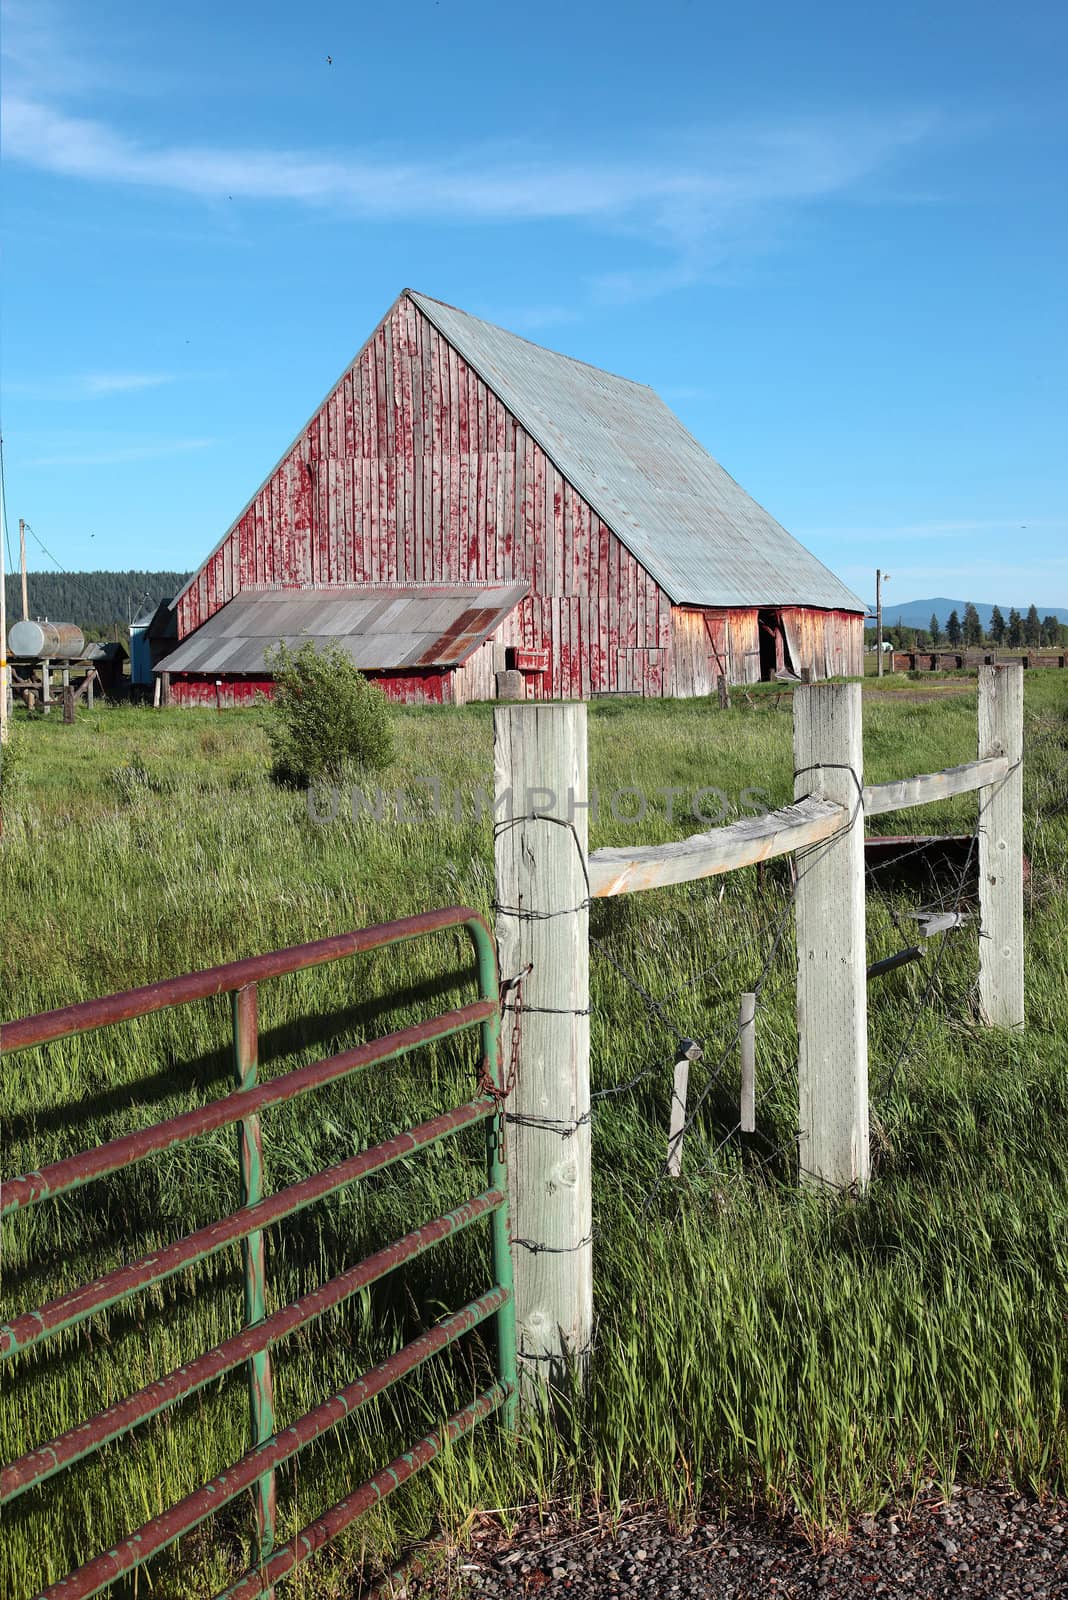 Old barn and fence in rural south Oregon Klamath Falls region.